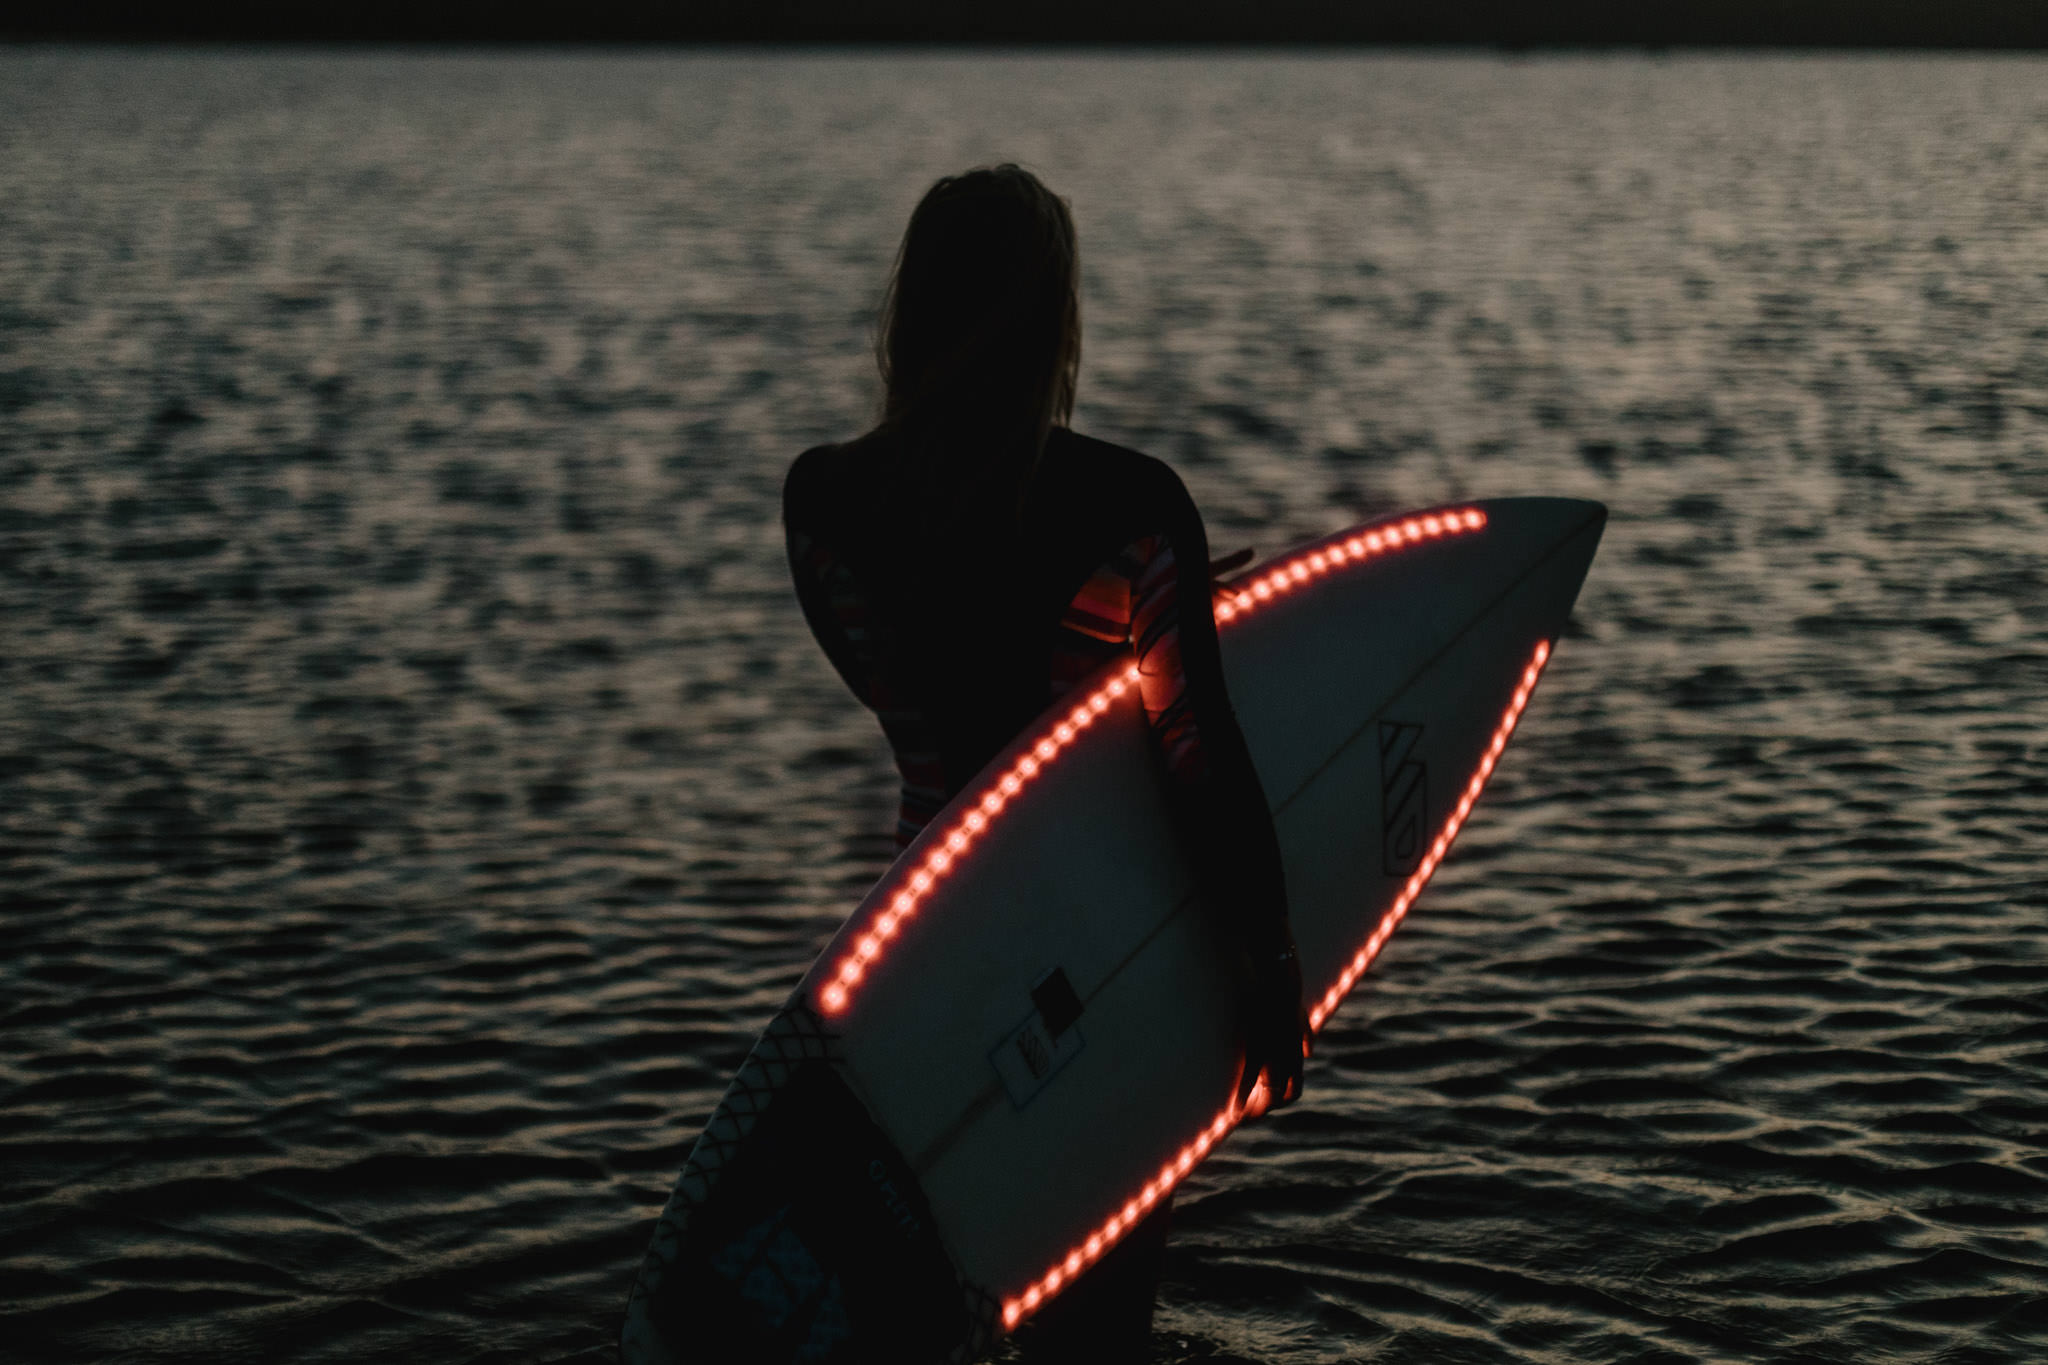 Séance photo de nuit avec une surfeuse